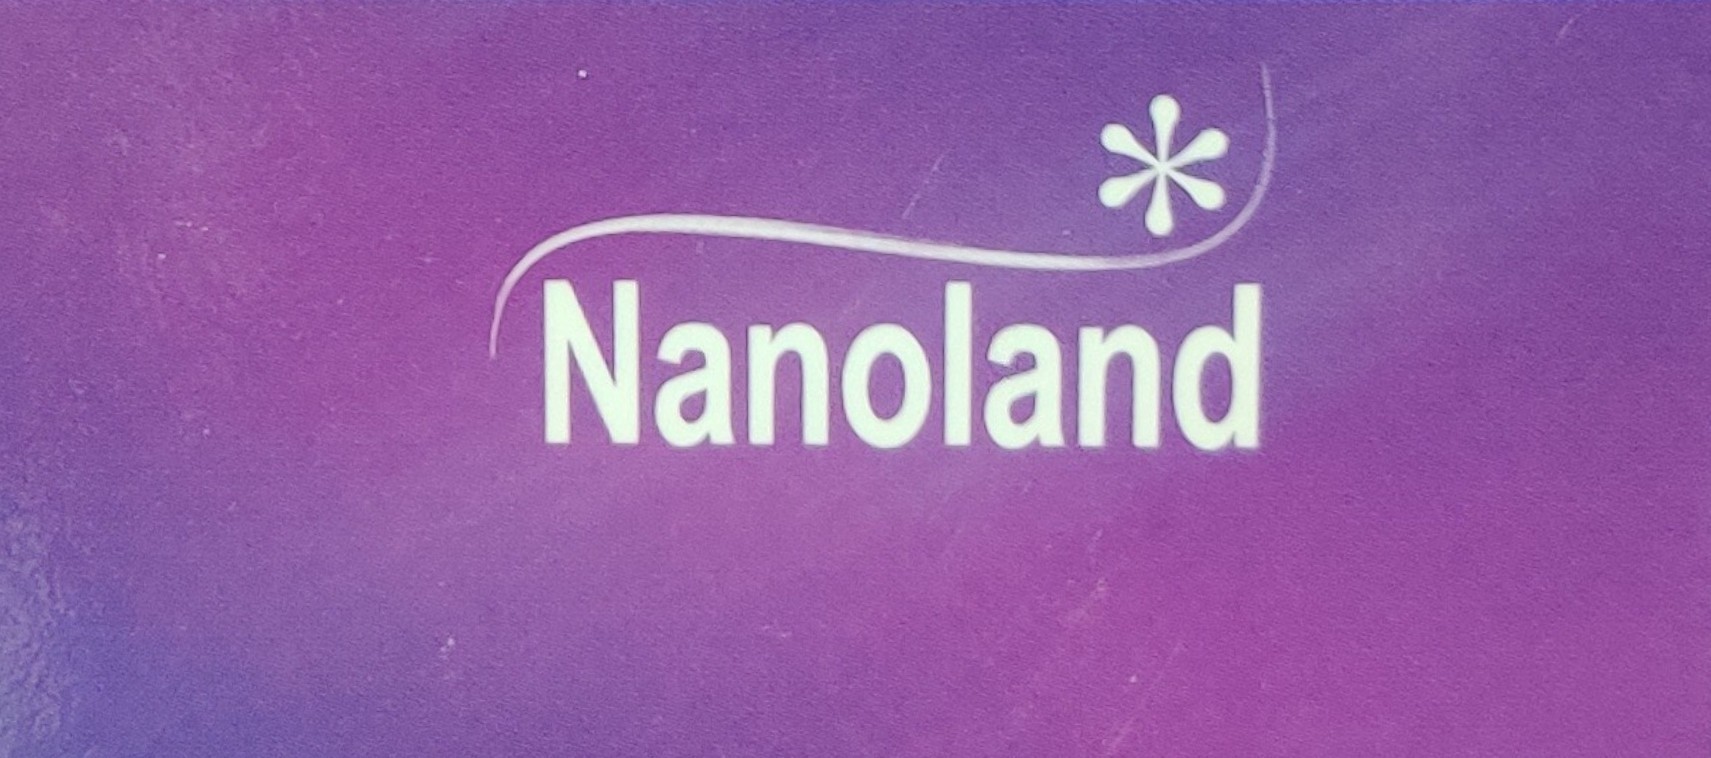 Nanoland